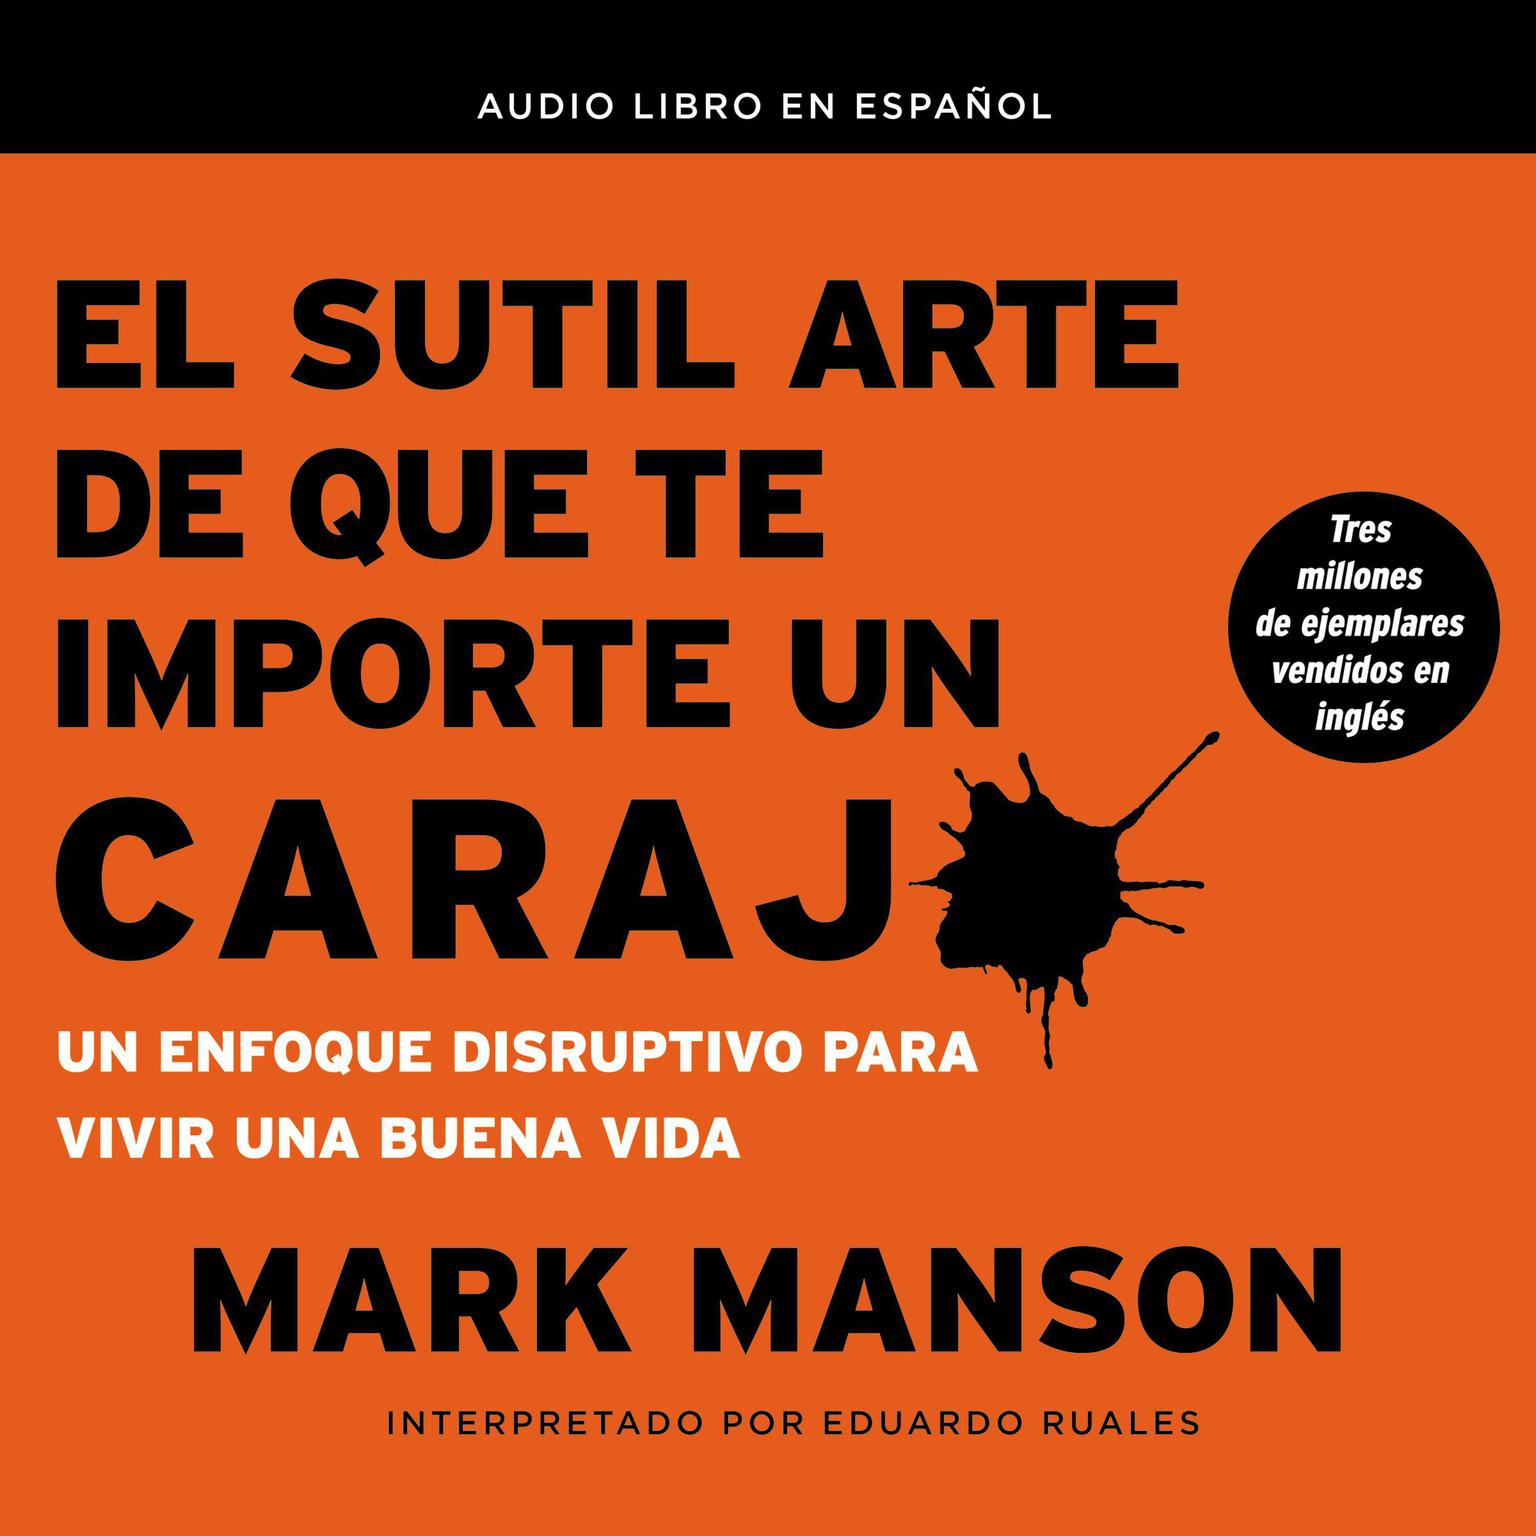 El sutil arte de que te importe un caraj*: Un enfoque disruptivo para vivir una buena vida Audiobook, by Mark Manson